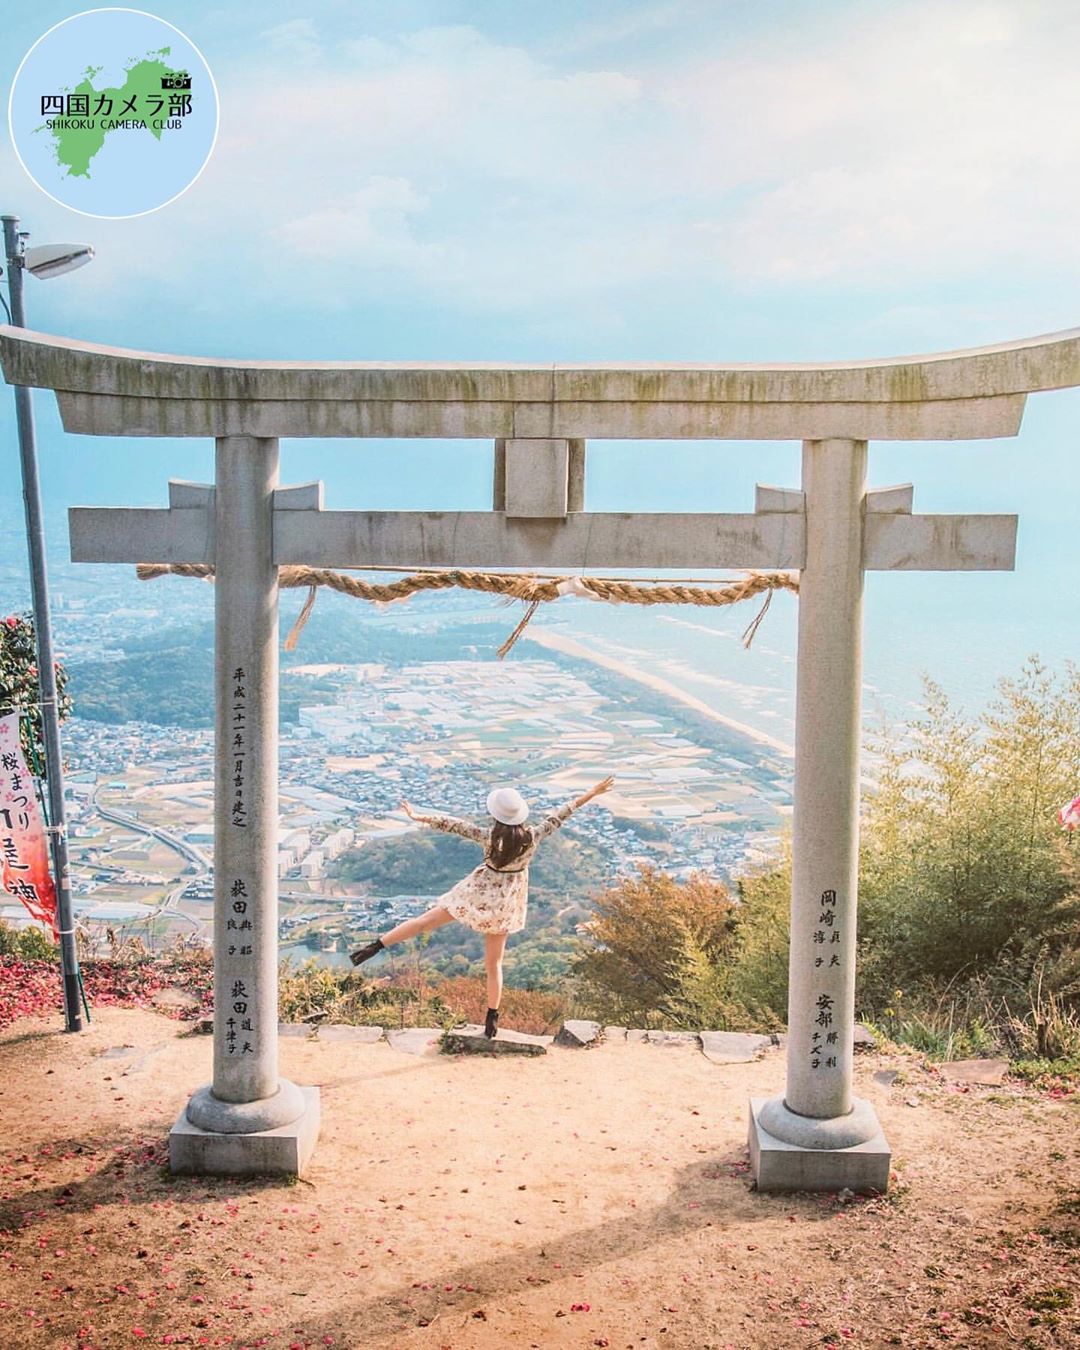 夢幻度破錶 天空鳥居 日本香川縣高屋神社 隨意一拍都是桌布質素的照片 Girlsmood 女生感覺